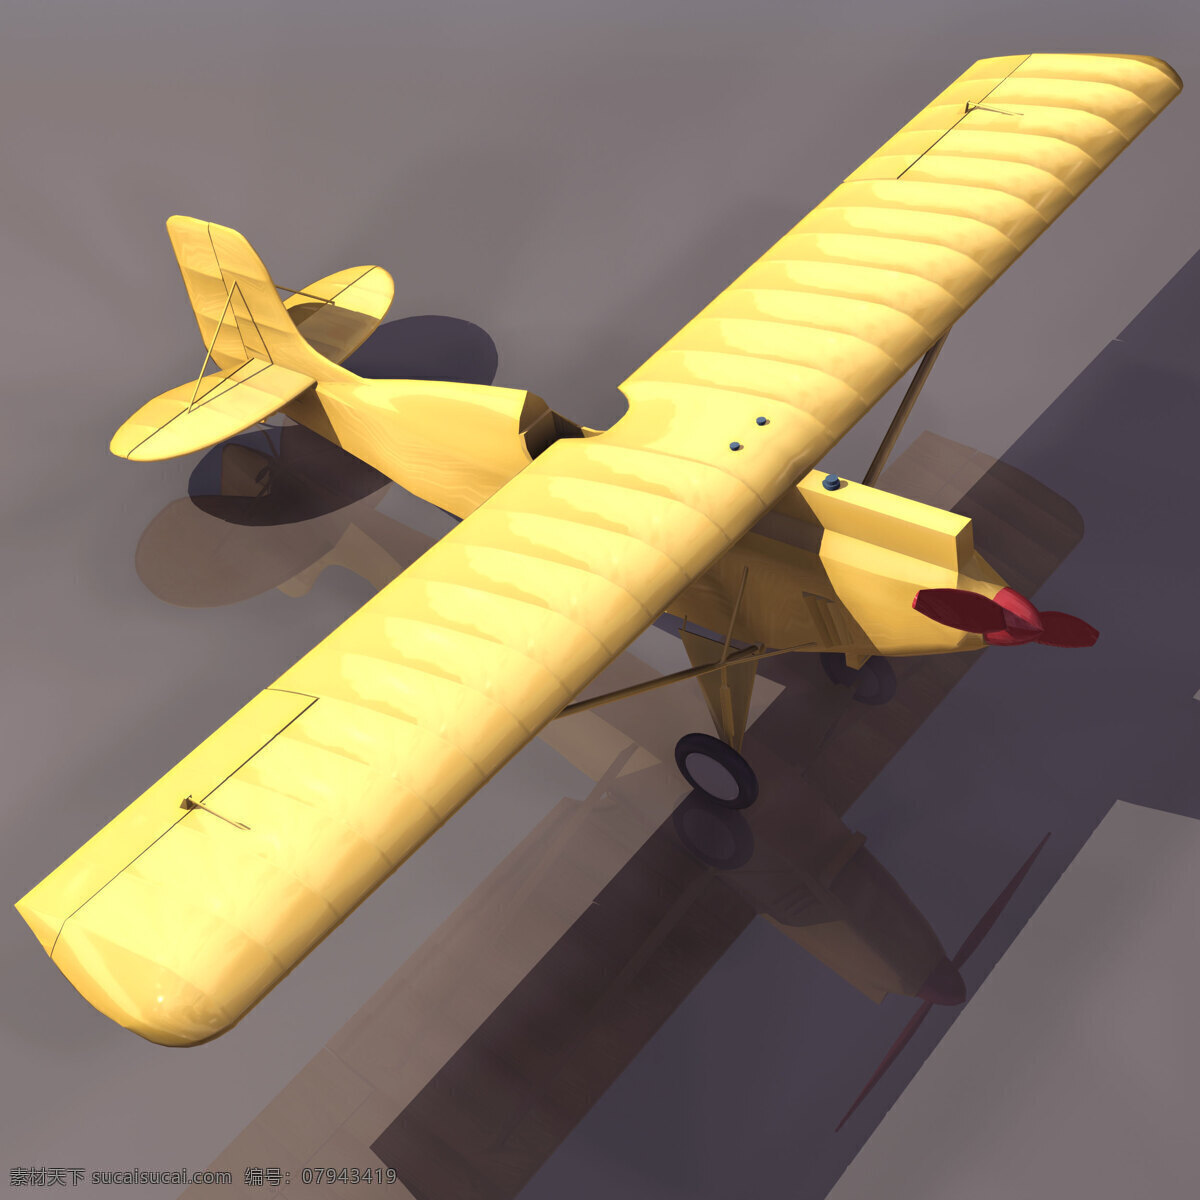 3d 飞机模型 3d飞机模型 3d设计模型 max 源文件 模板下载 机场设备模型 3d模型素材 其他3d模型